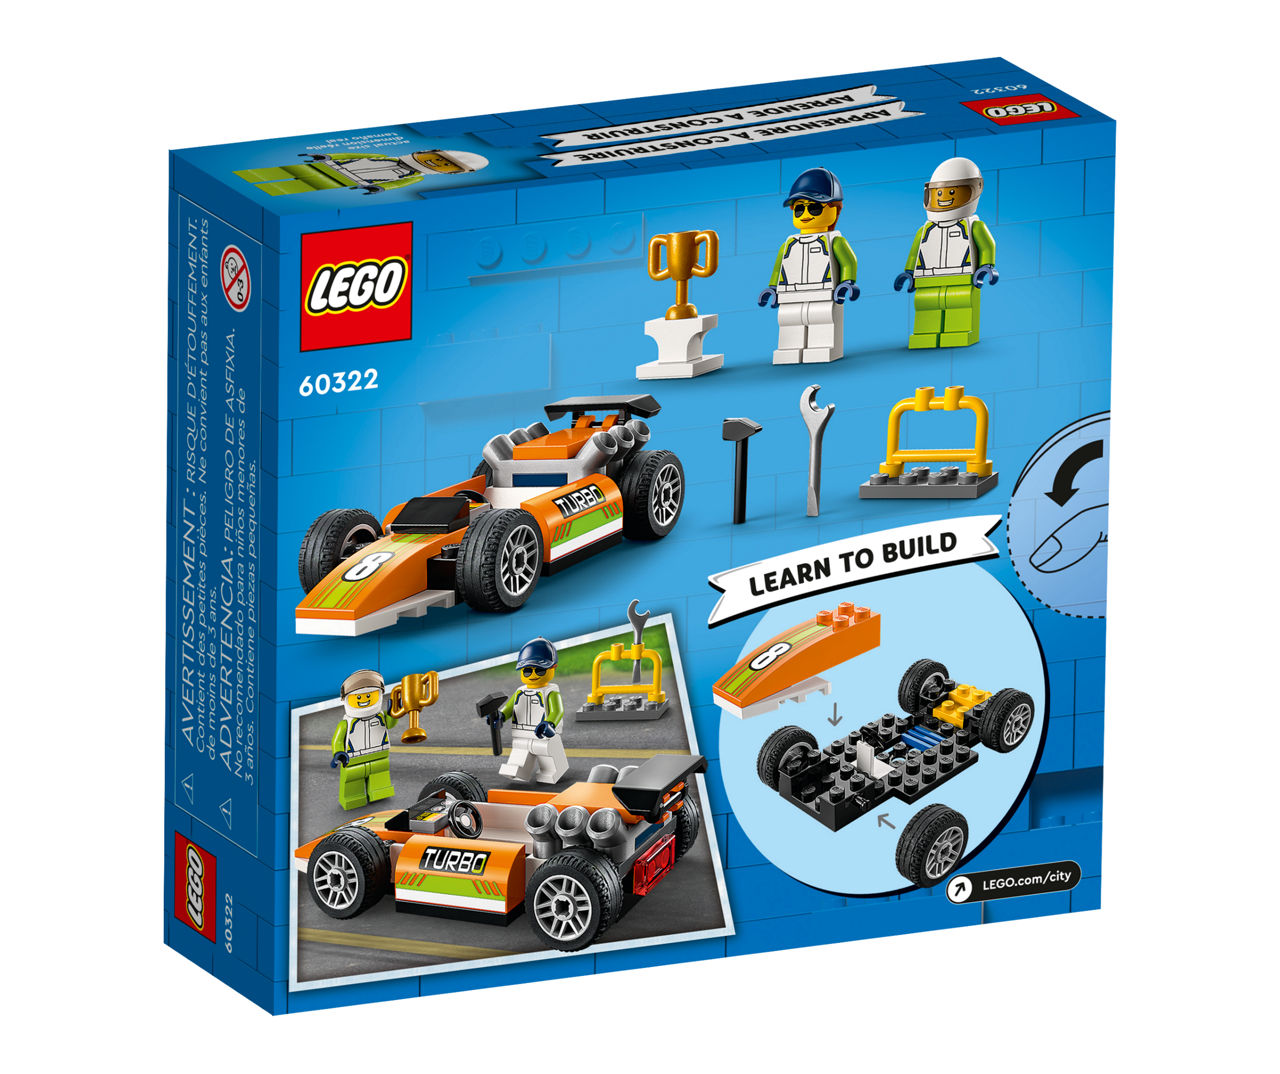 Aangenaam kennis te maken tafel Opnieuw schieten LEGO City Race Car 46-Piece 60322 Building Set | Big Lots